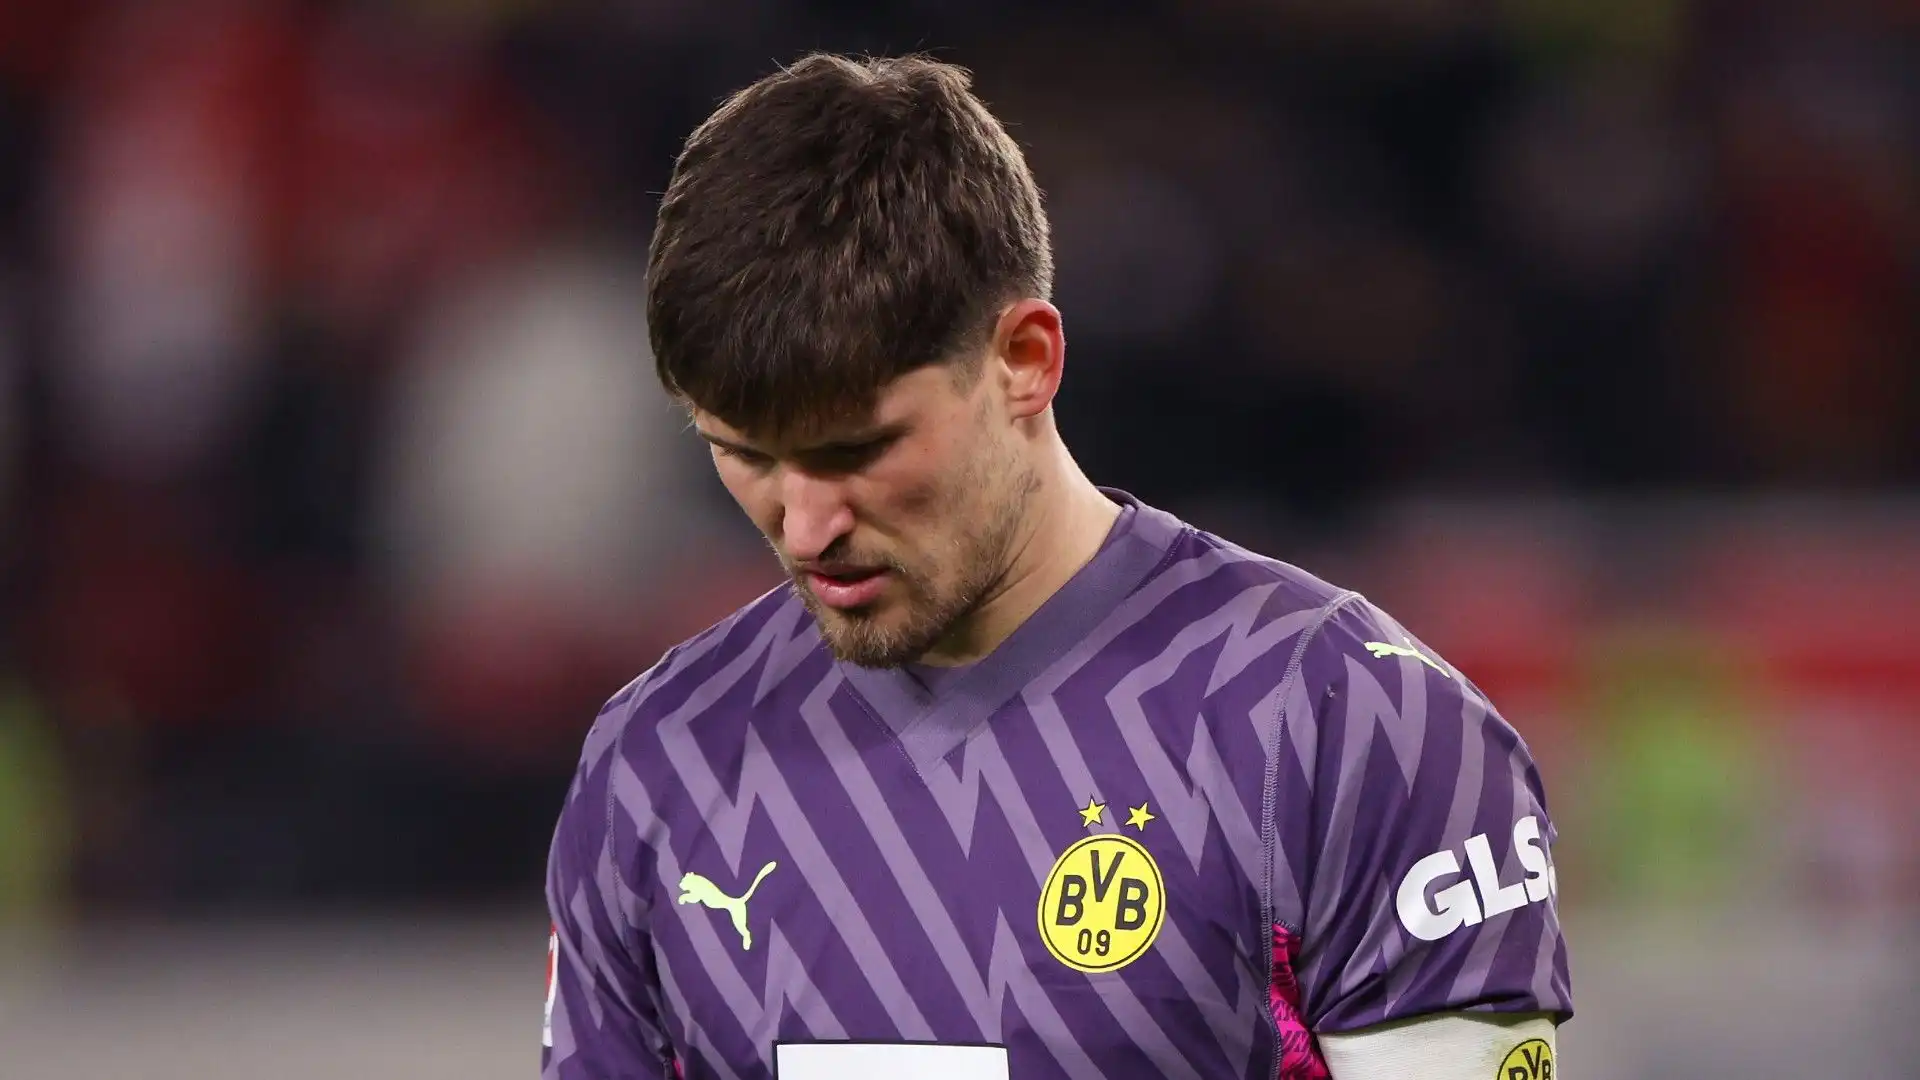 Brutta sconfitta per il Borussia Dortmund: le immagini della partita